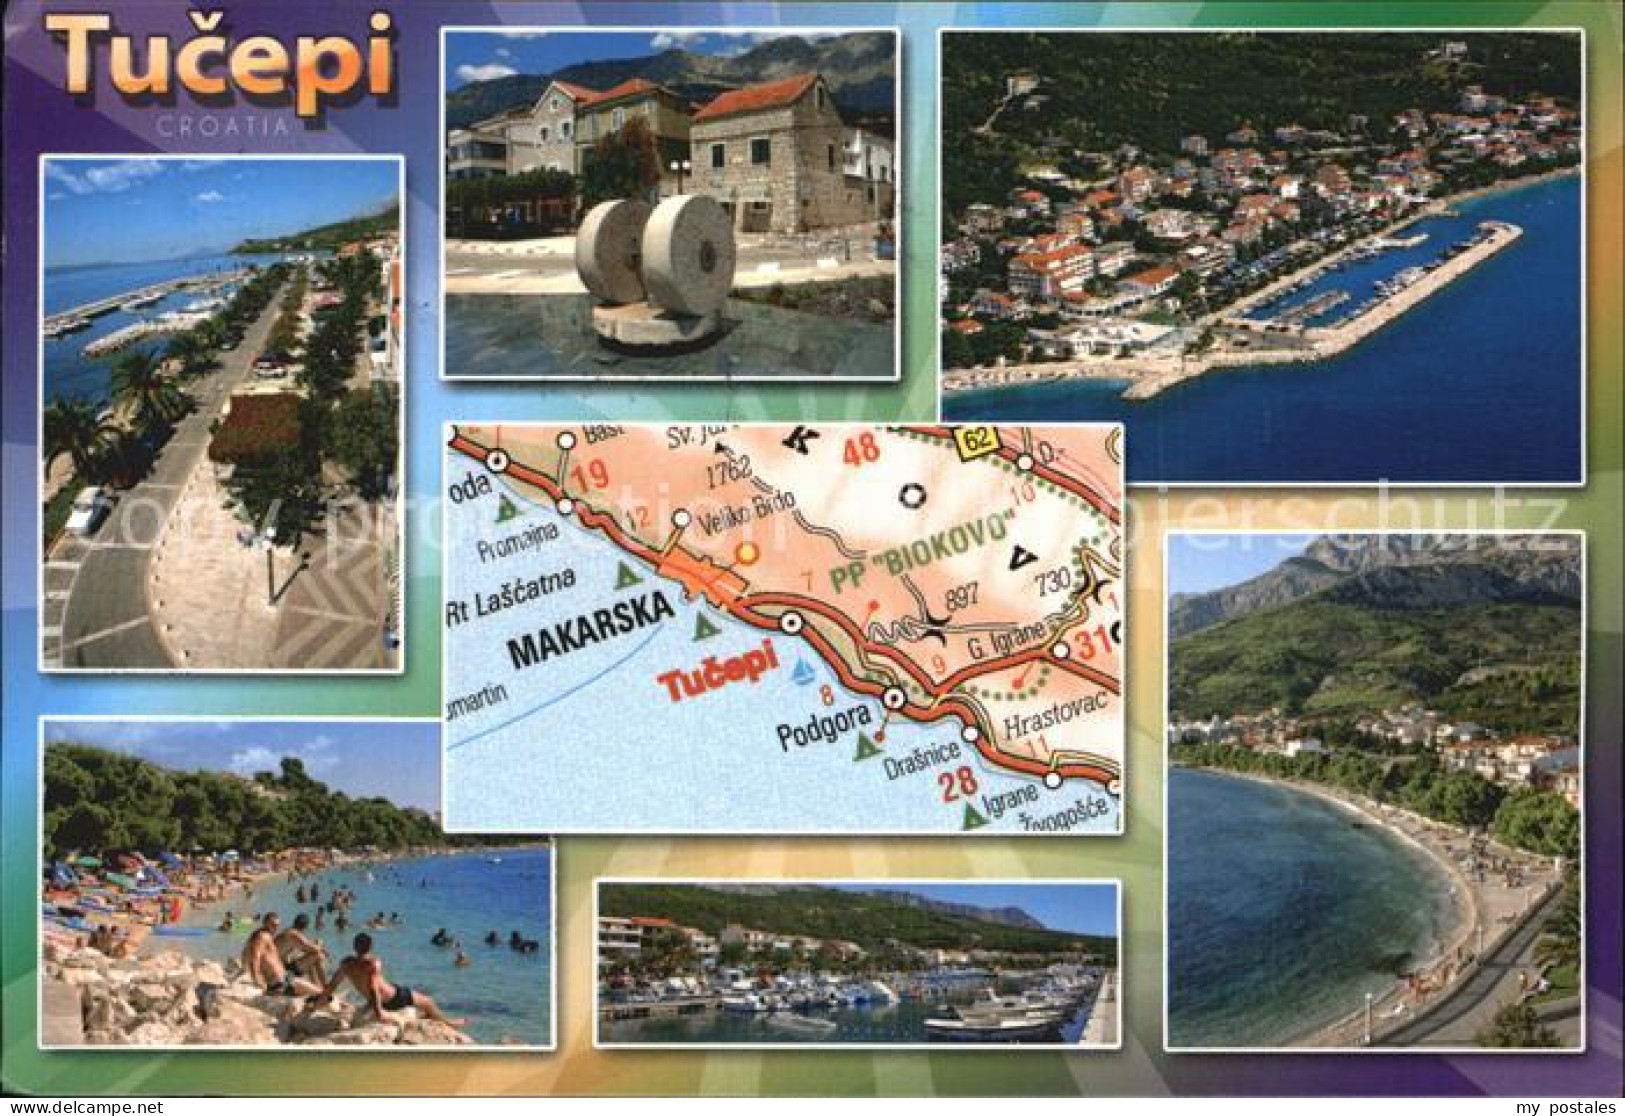 72566650 Tucepi Fliegeraufnahme Strand Hafen Croatia - Croatia